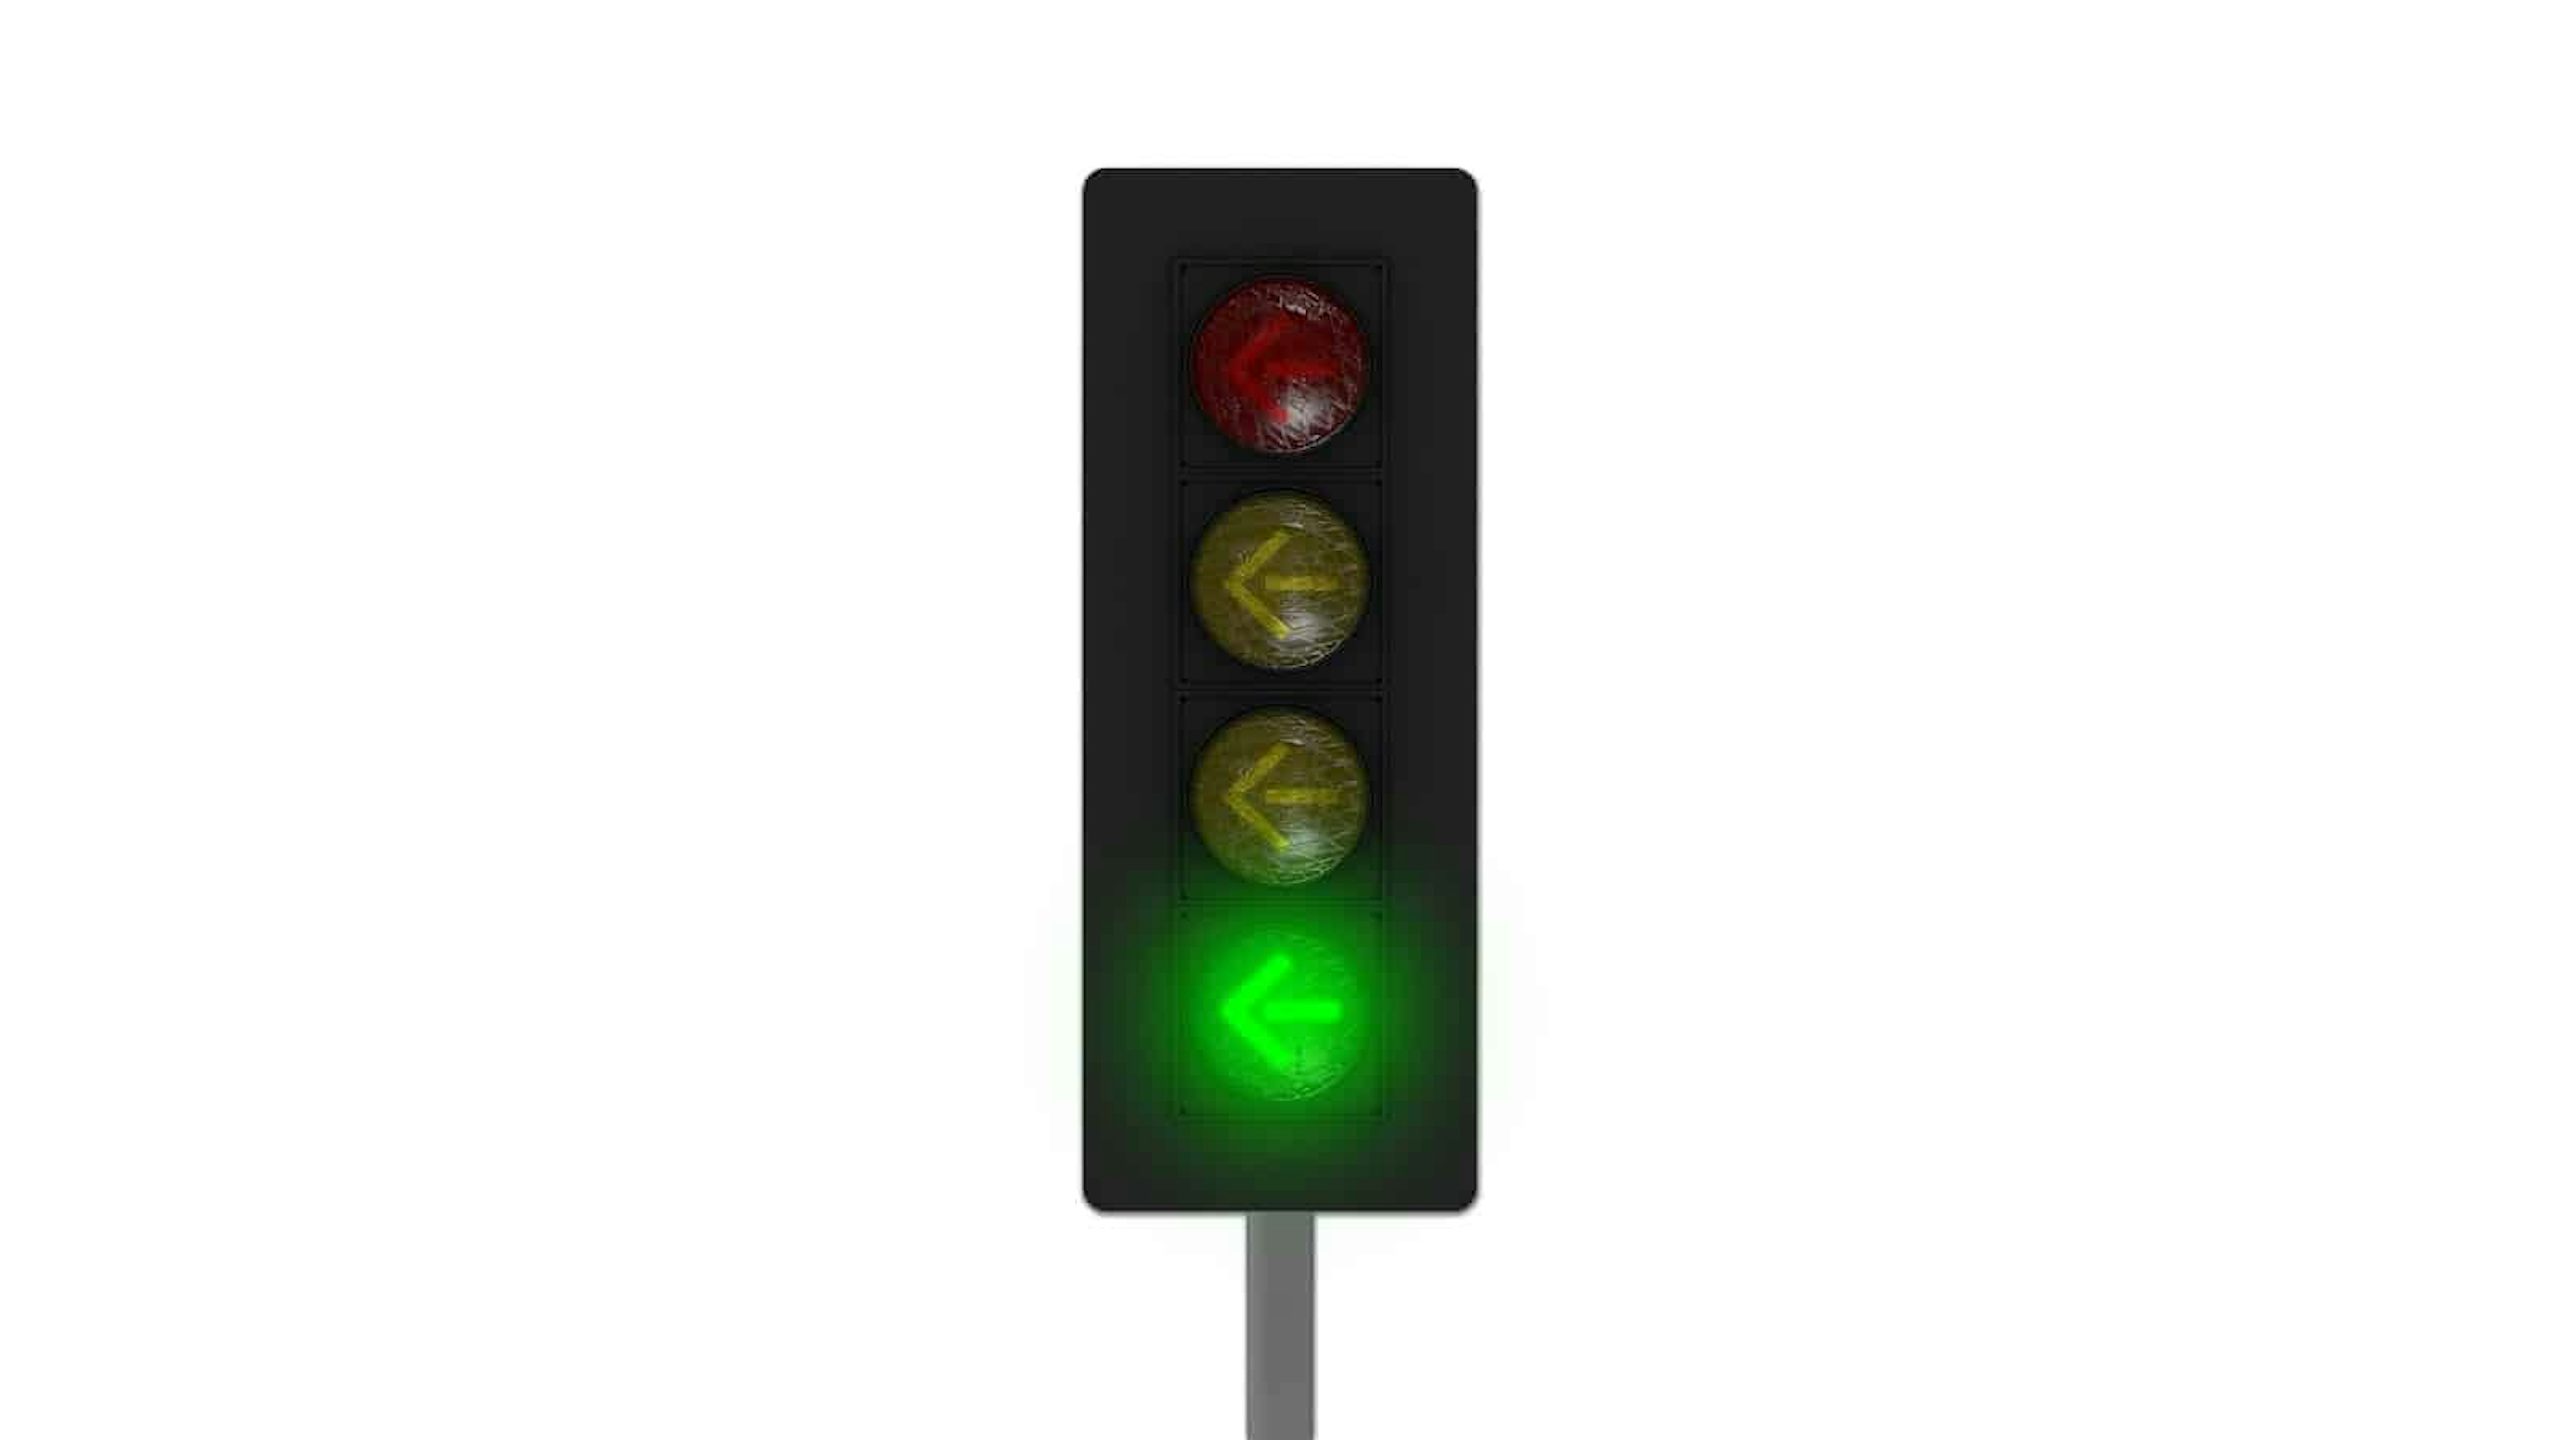 flashing red traffic light